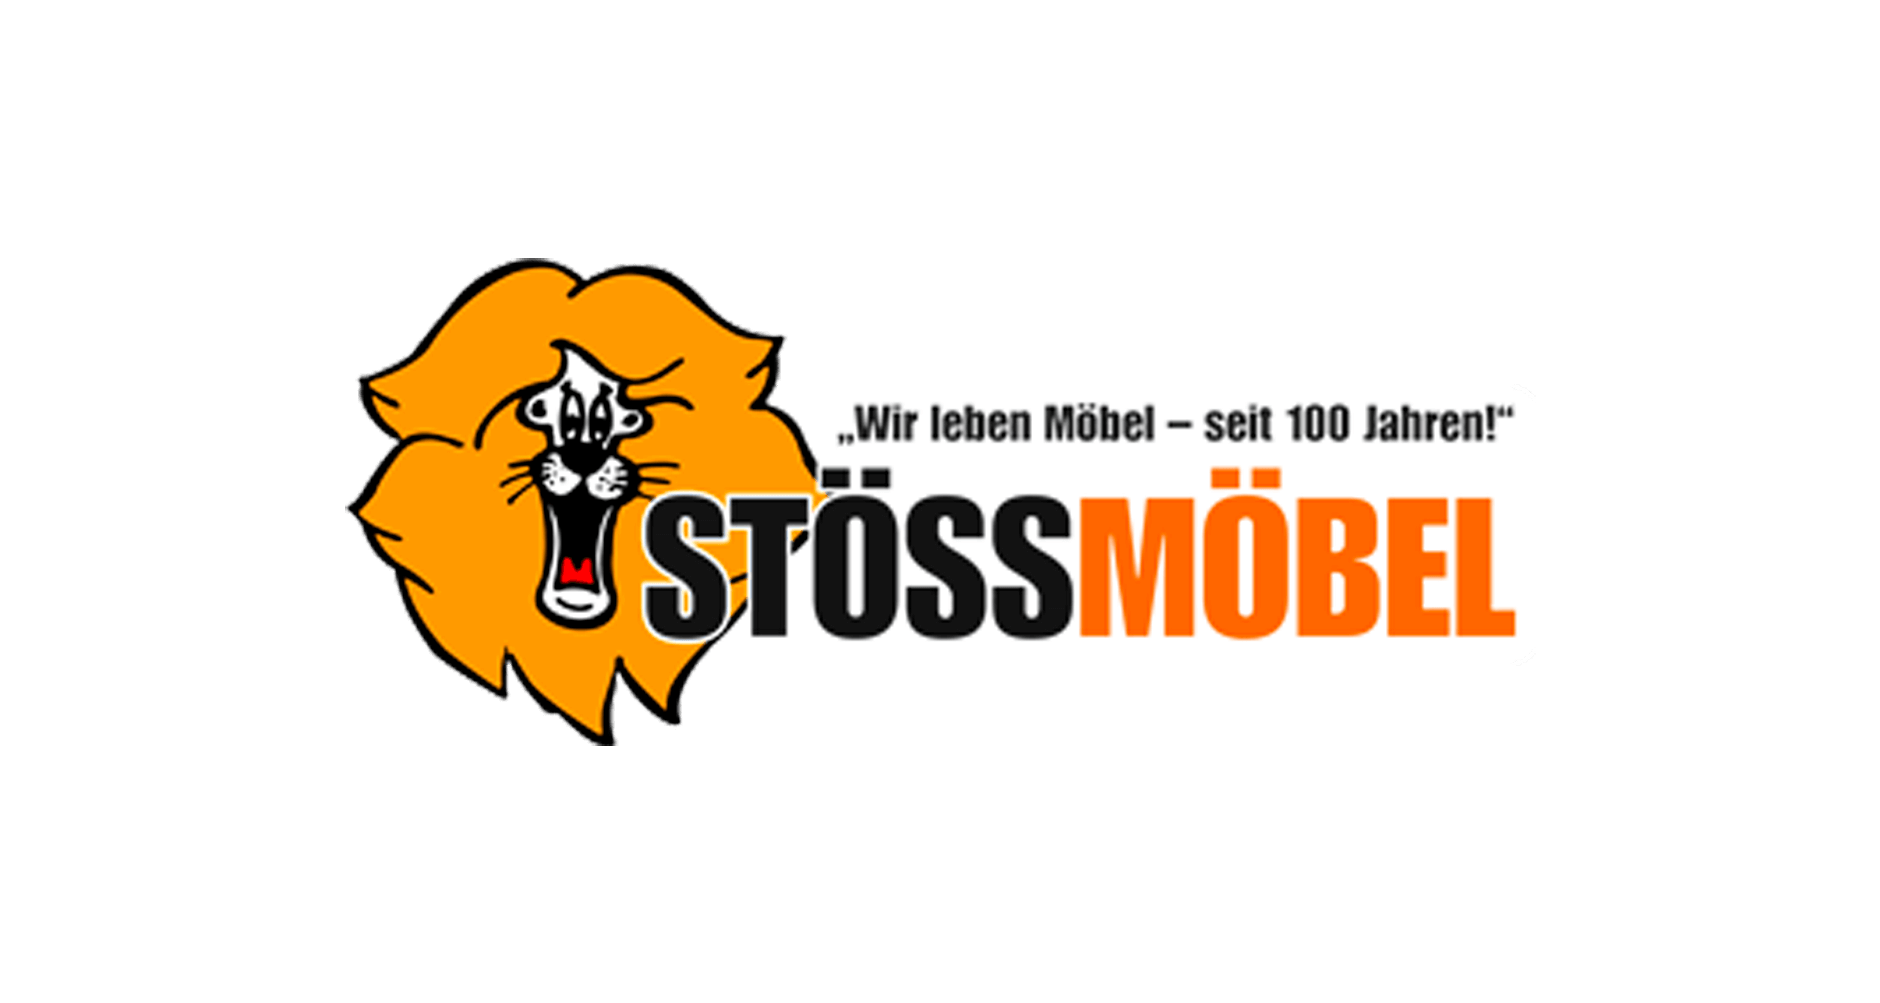 (c) Stoess-moebel.de